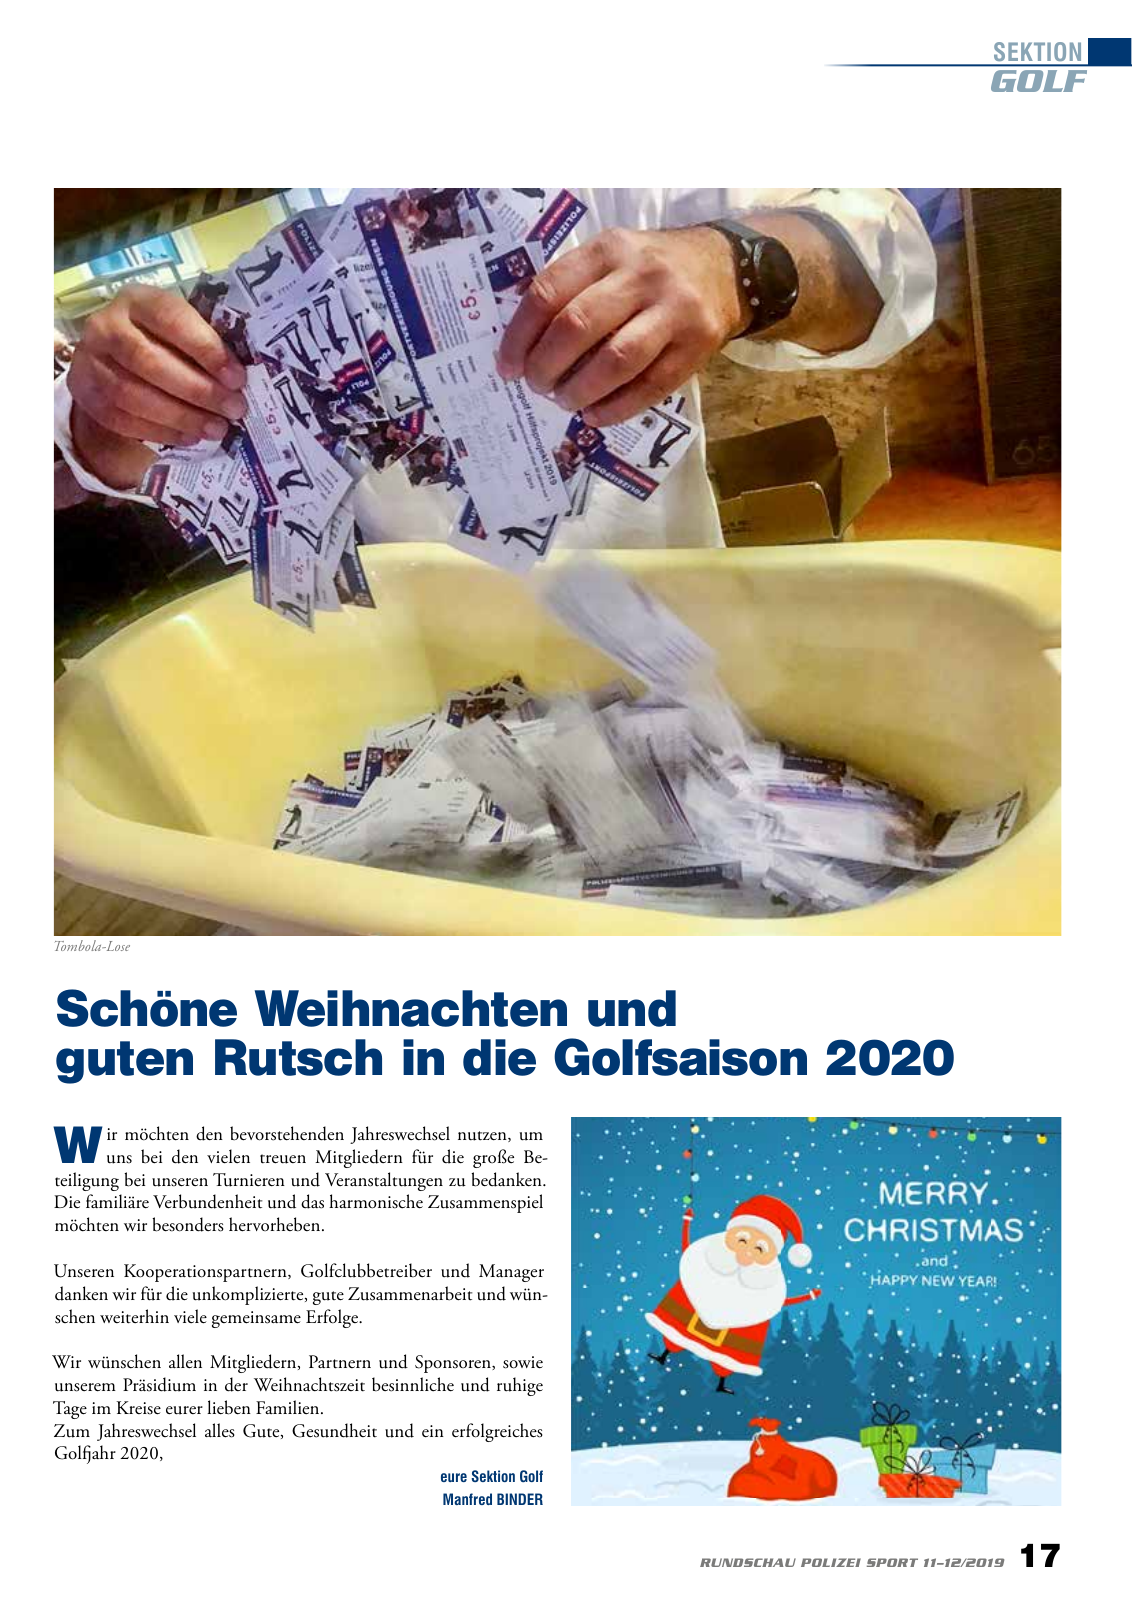 Vorschau Rundschau Polizei Sport 11-12/2019 Seite 17